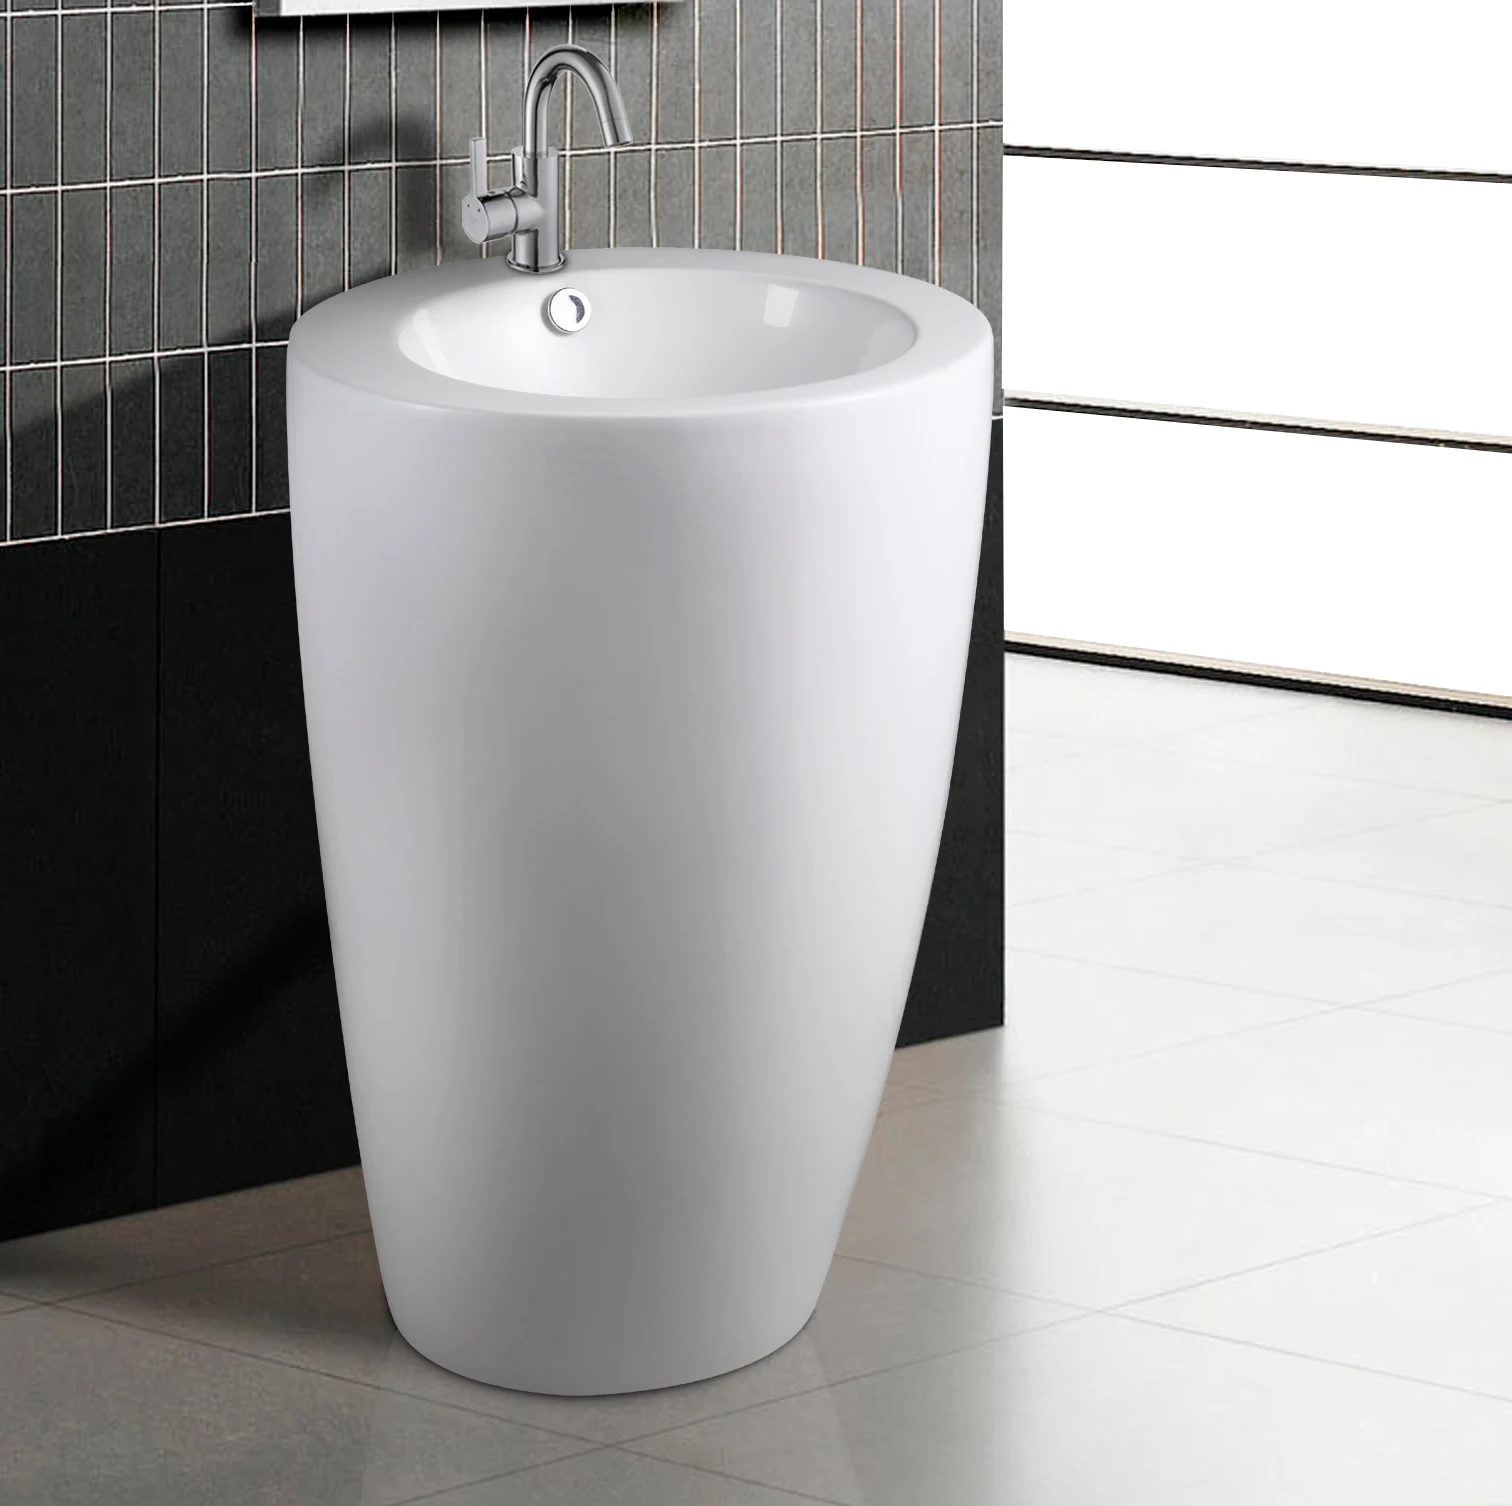 Cyg 4001big Bathroom Wash Basin Ceramic Pedestal Sink Designs Buy Wash Basin Designs